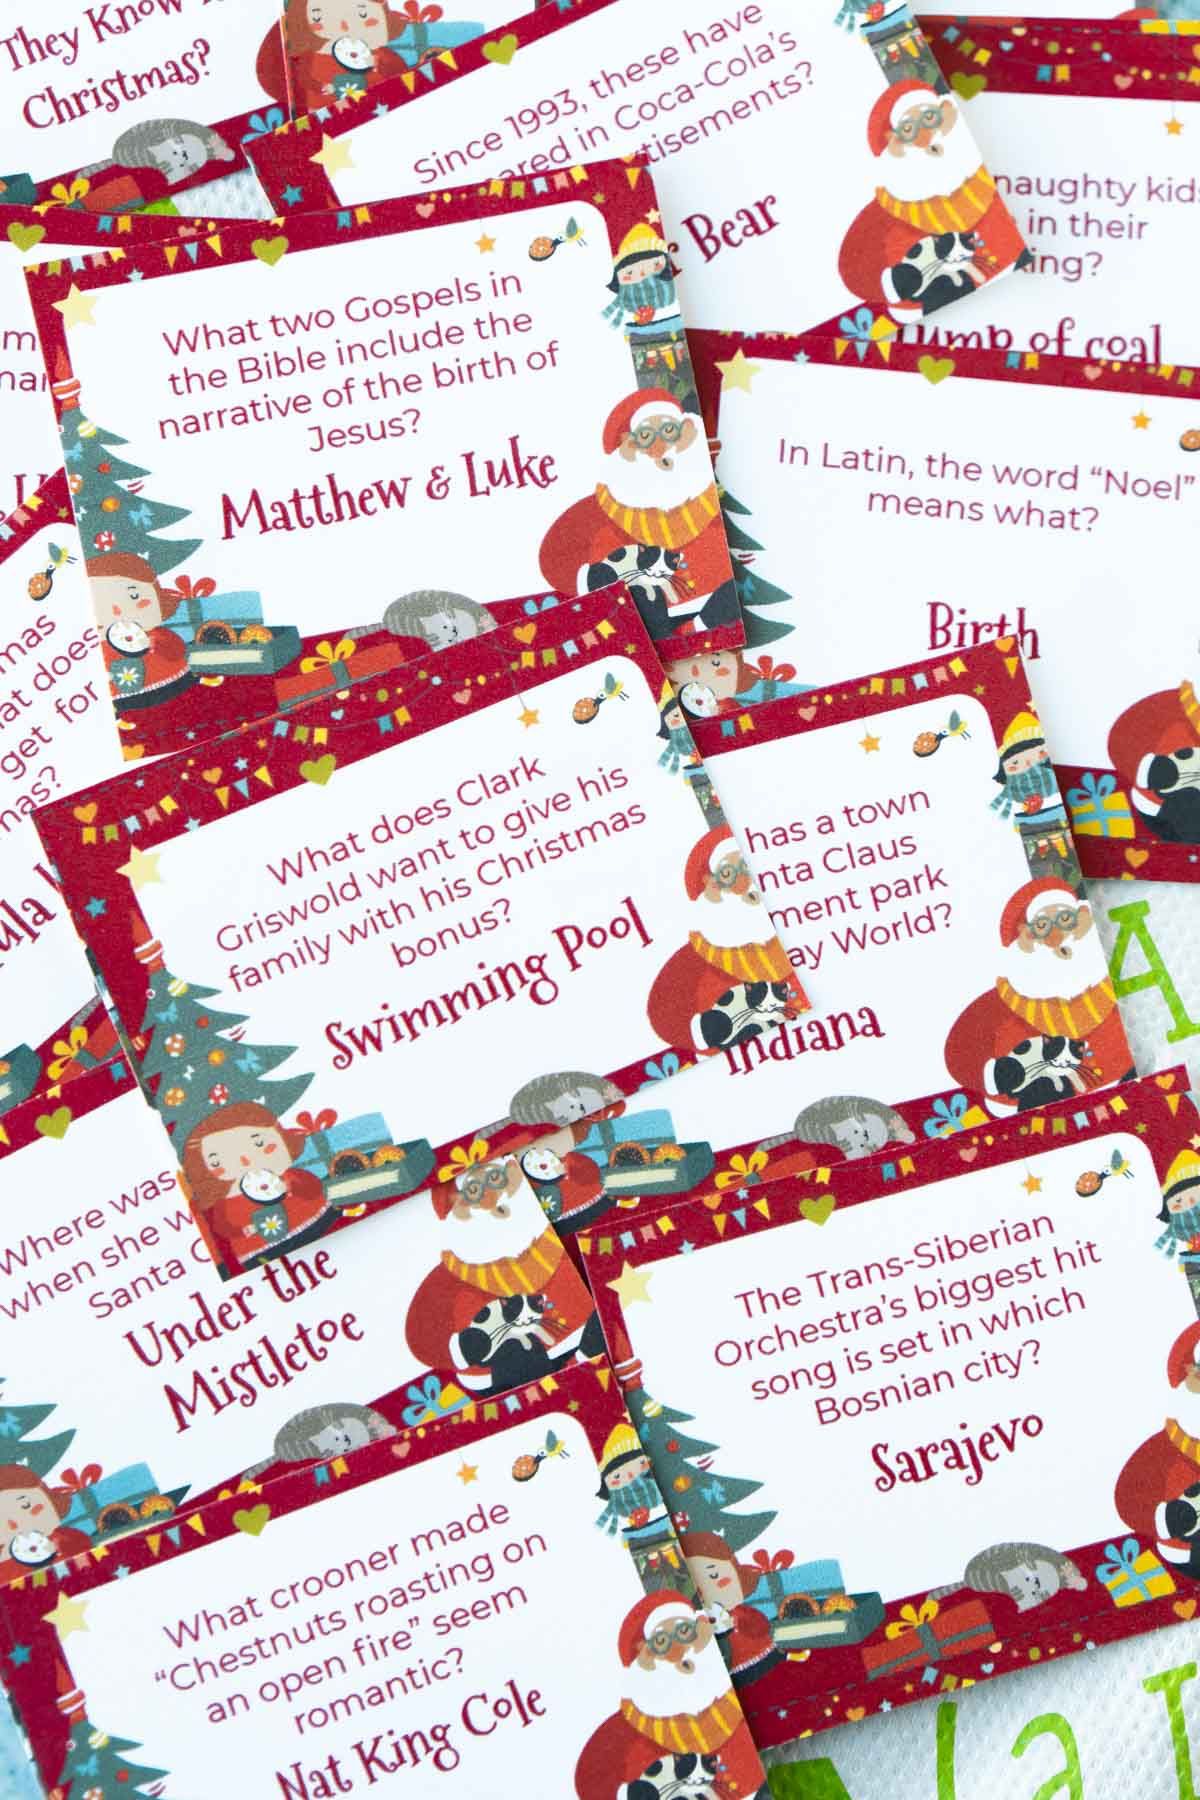 Pertanyaan-pertanyaan sepele Natal pada kartu di tumpukan